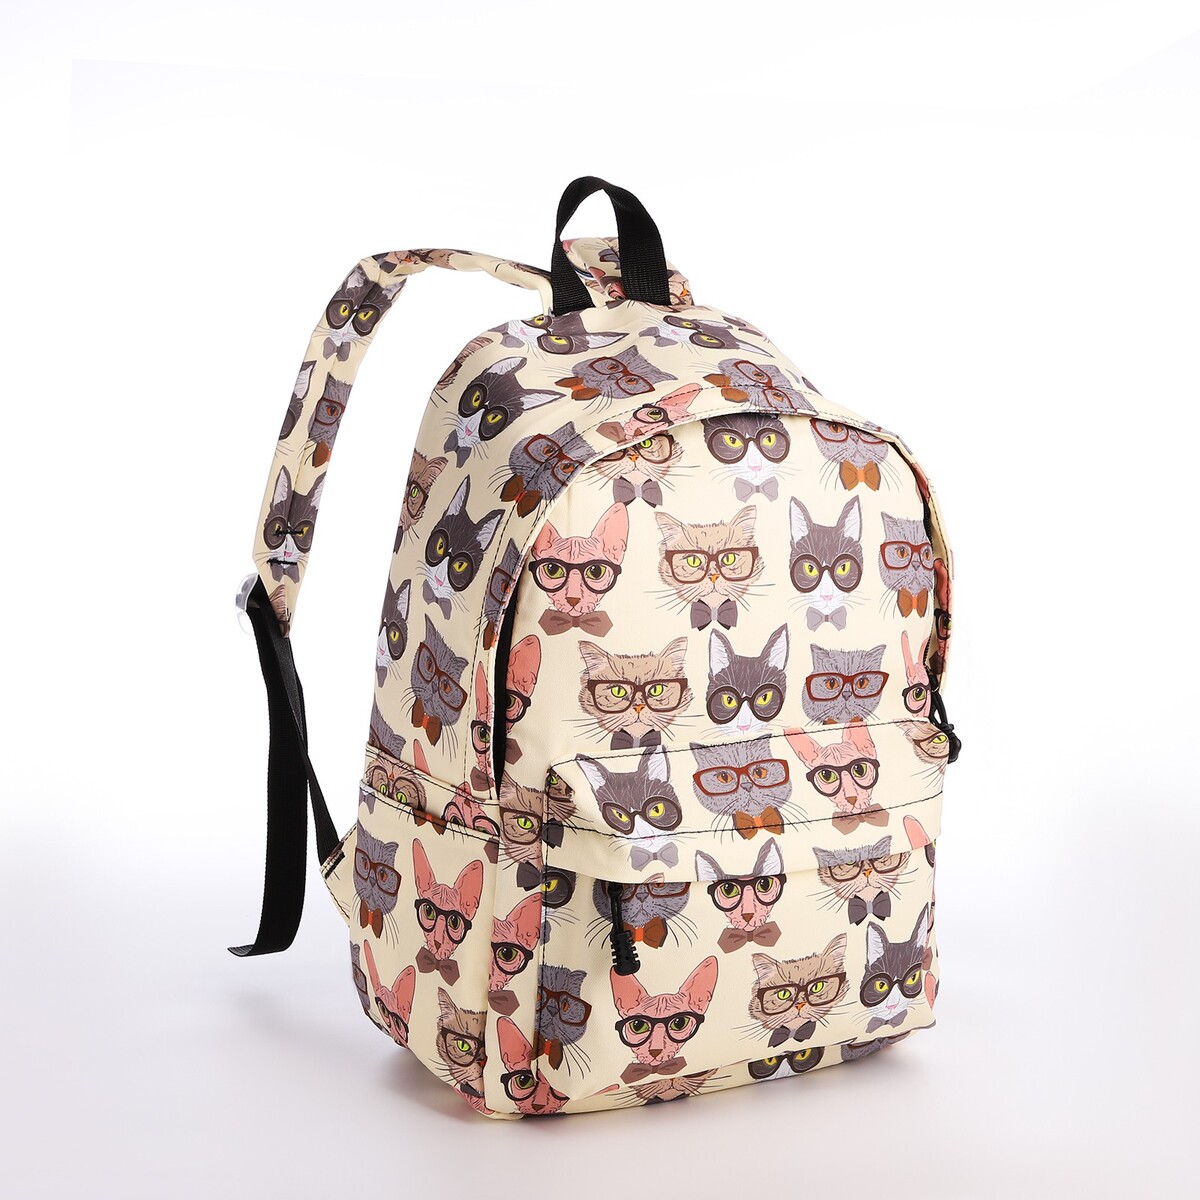 Рюкзак школьный из текстиля на молнии, 4 кармана, кошелек, цвет бежевый рюкзак молодежный из текстиля на молнии 4 кармана бежевый